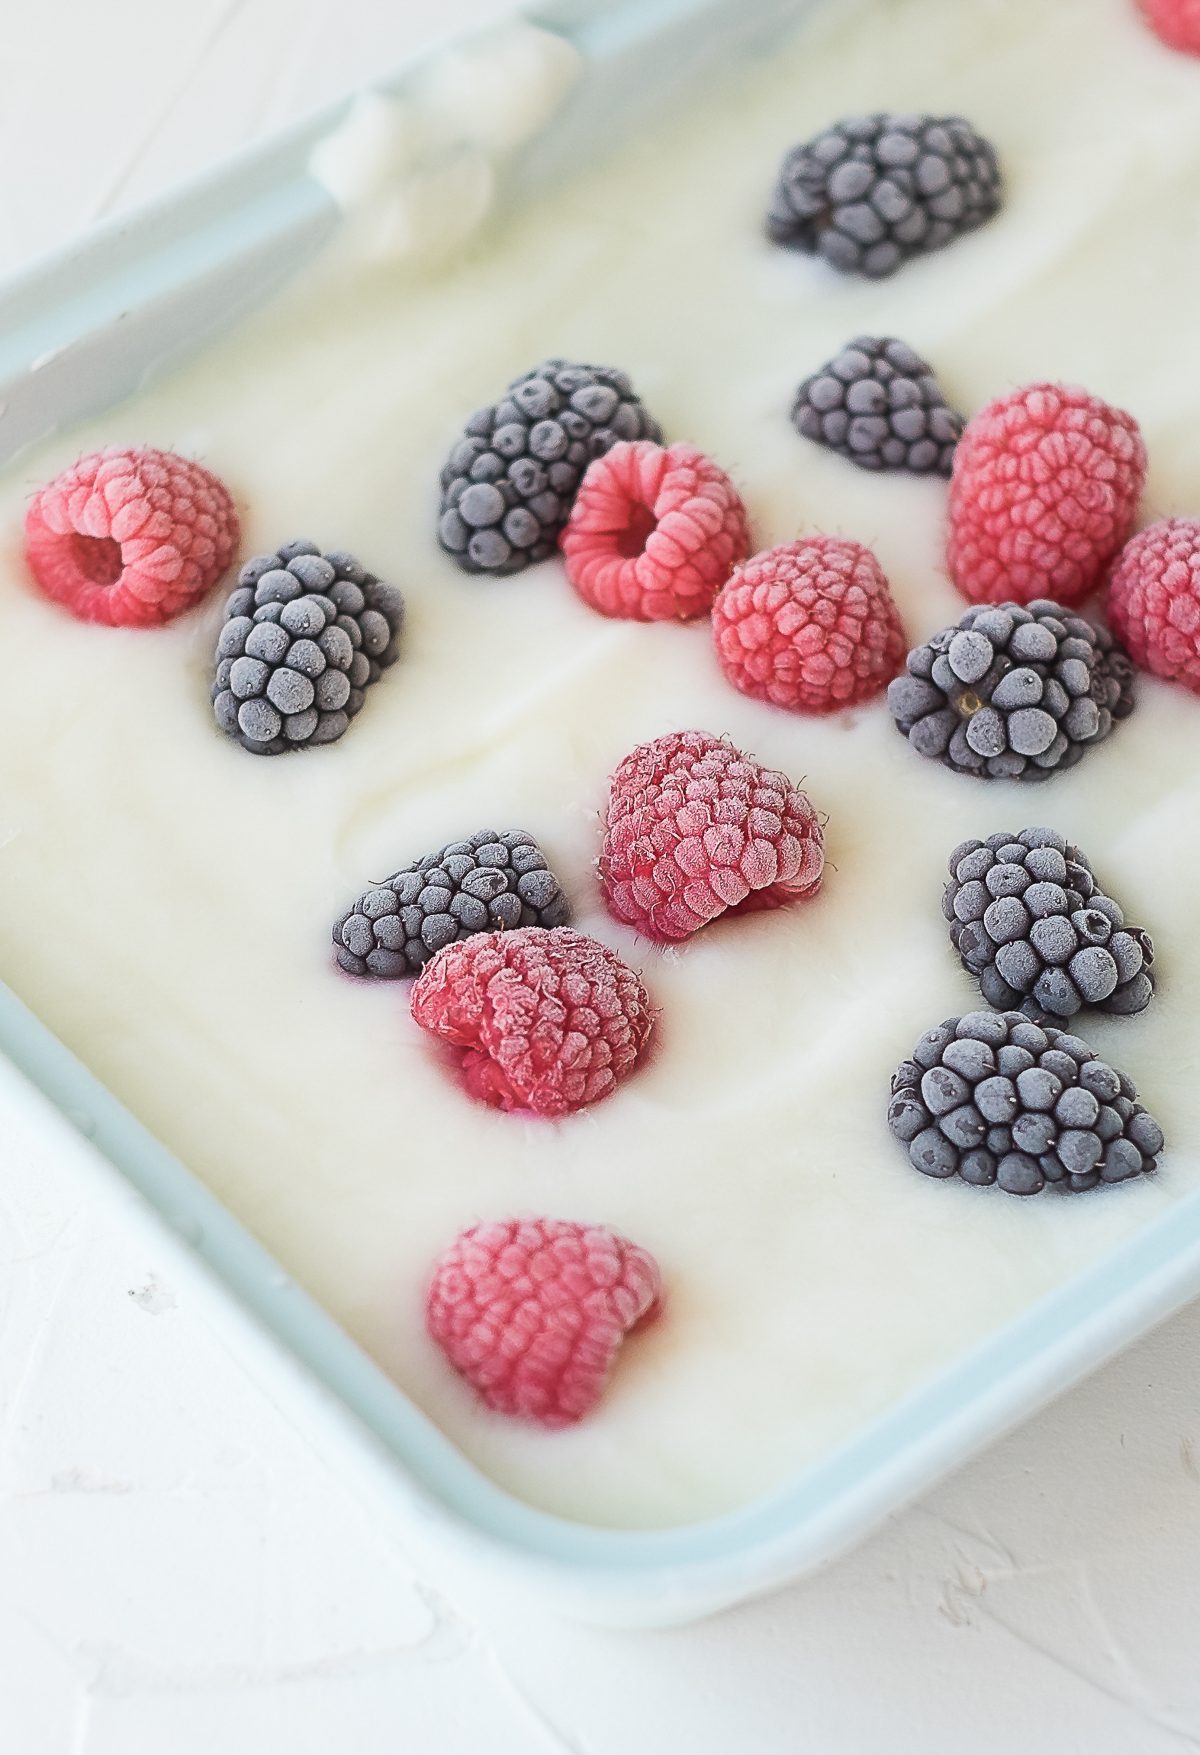 Yogurt frozen with berries in it